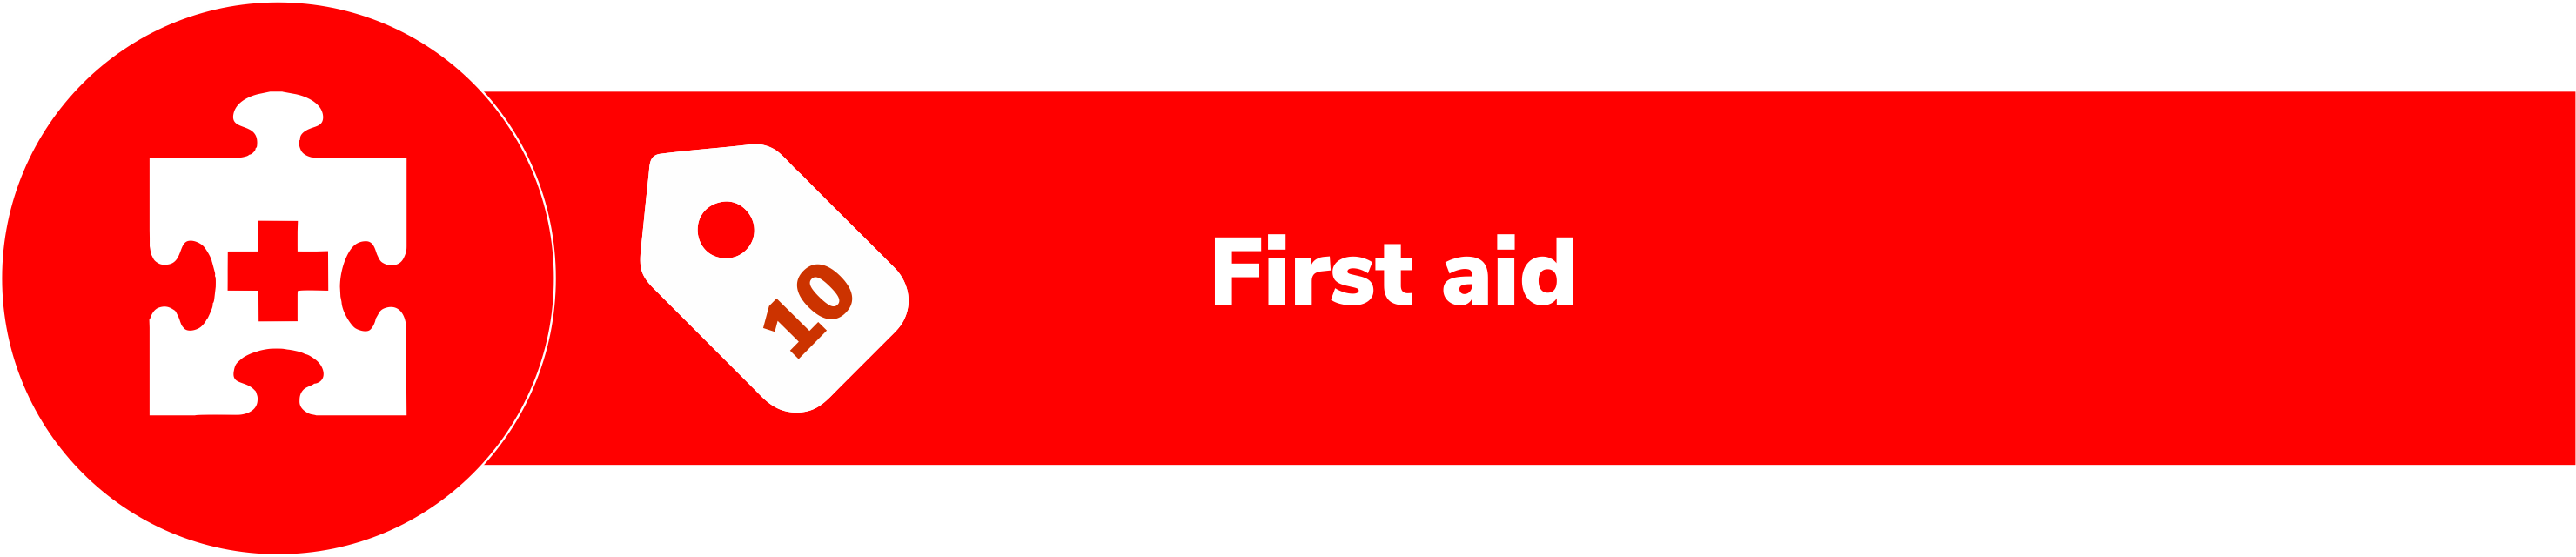 Module 10 - First aid